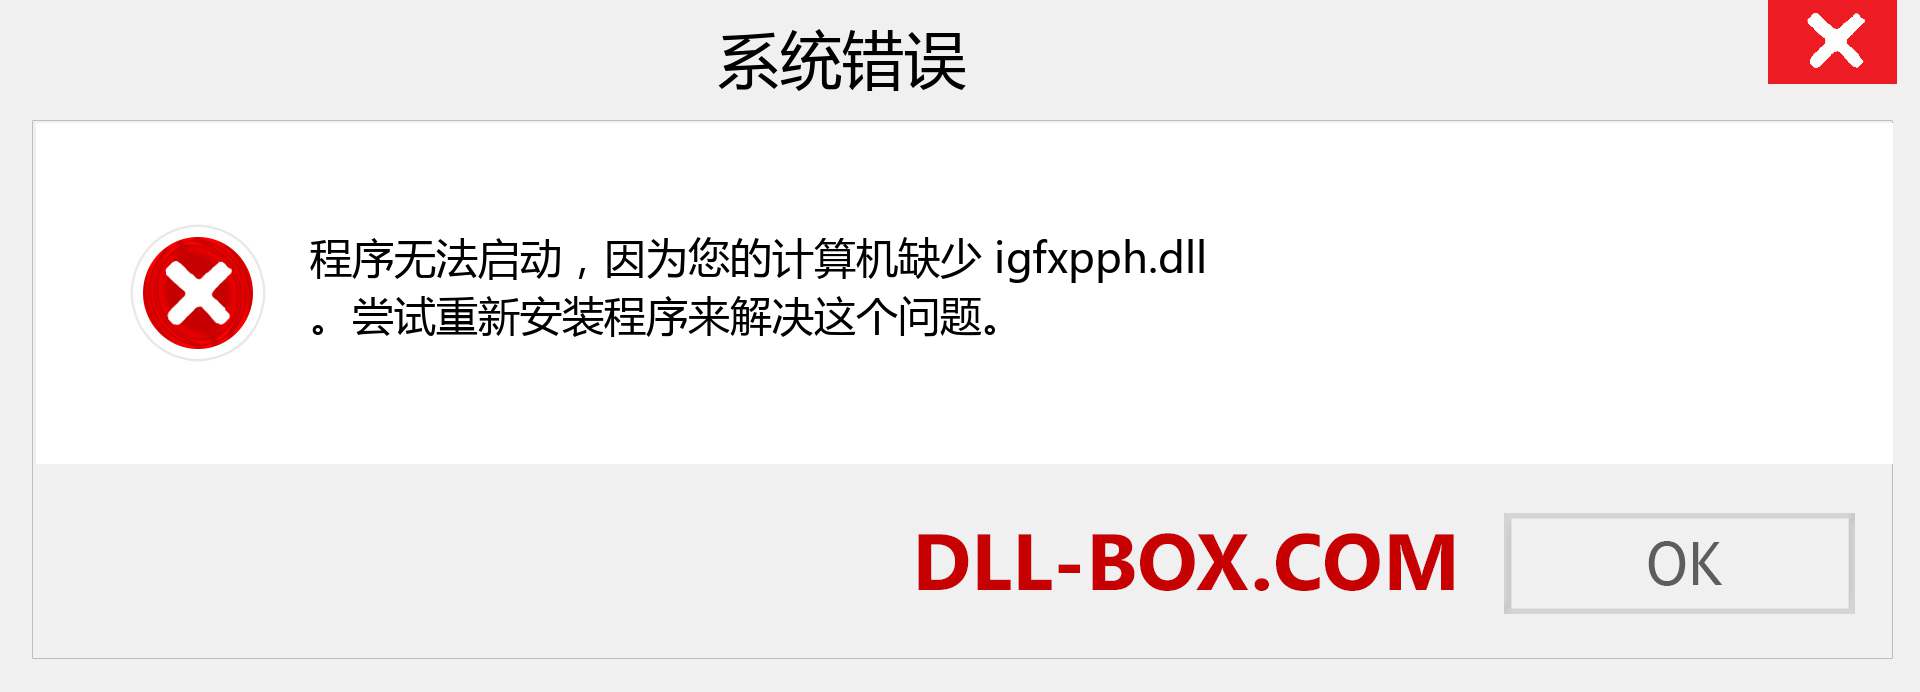 igfxpph.dll 文件丢失？。 适用于 Windows 7、8、10 的下载 - 修复 Windows、照片、图像上的 igfxpph dll 丢失错误